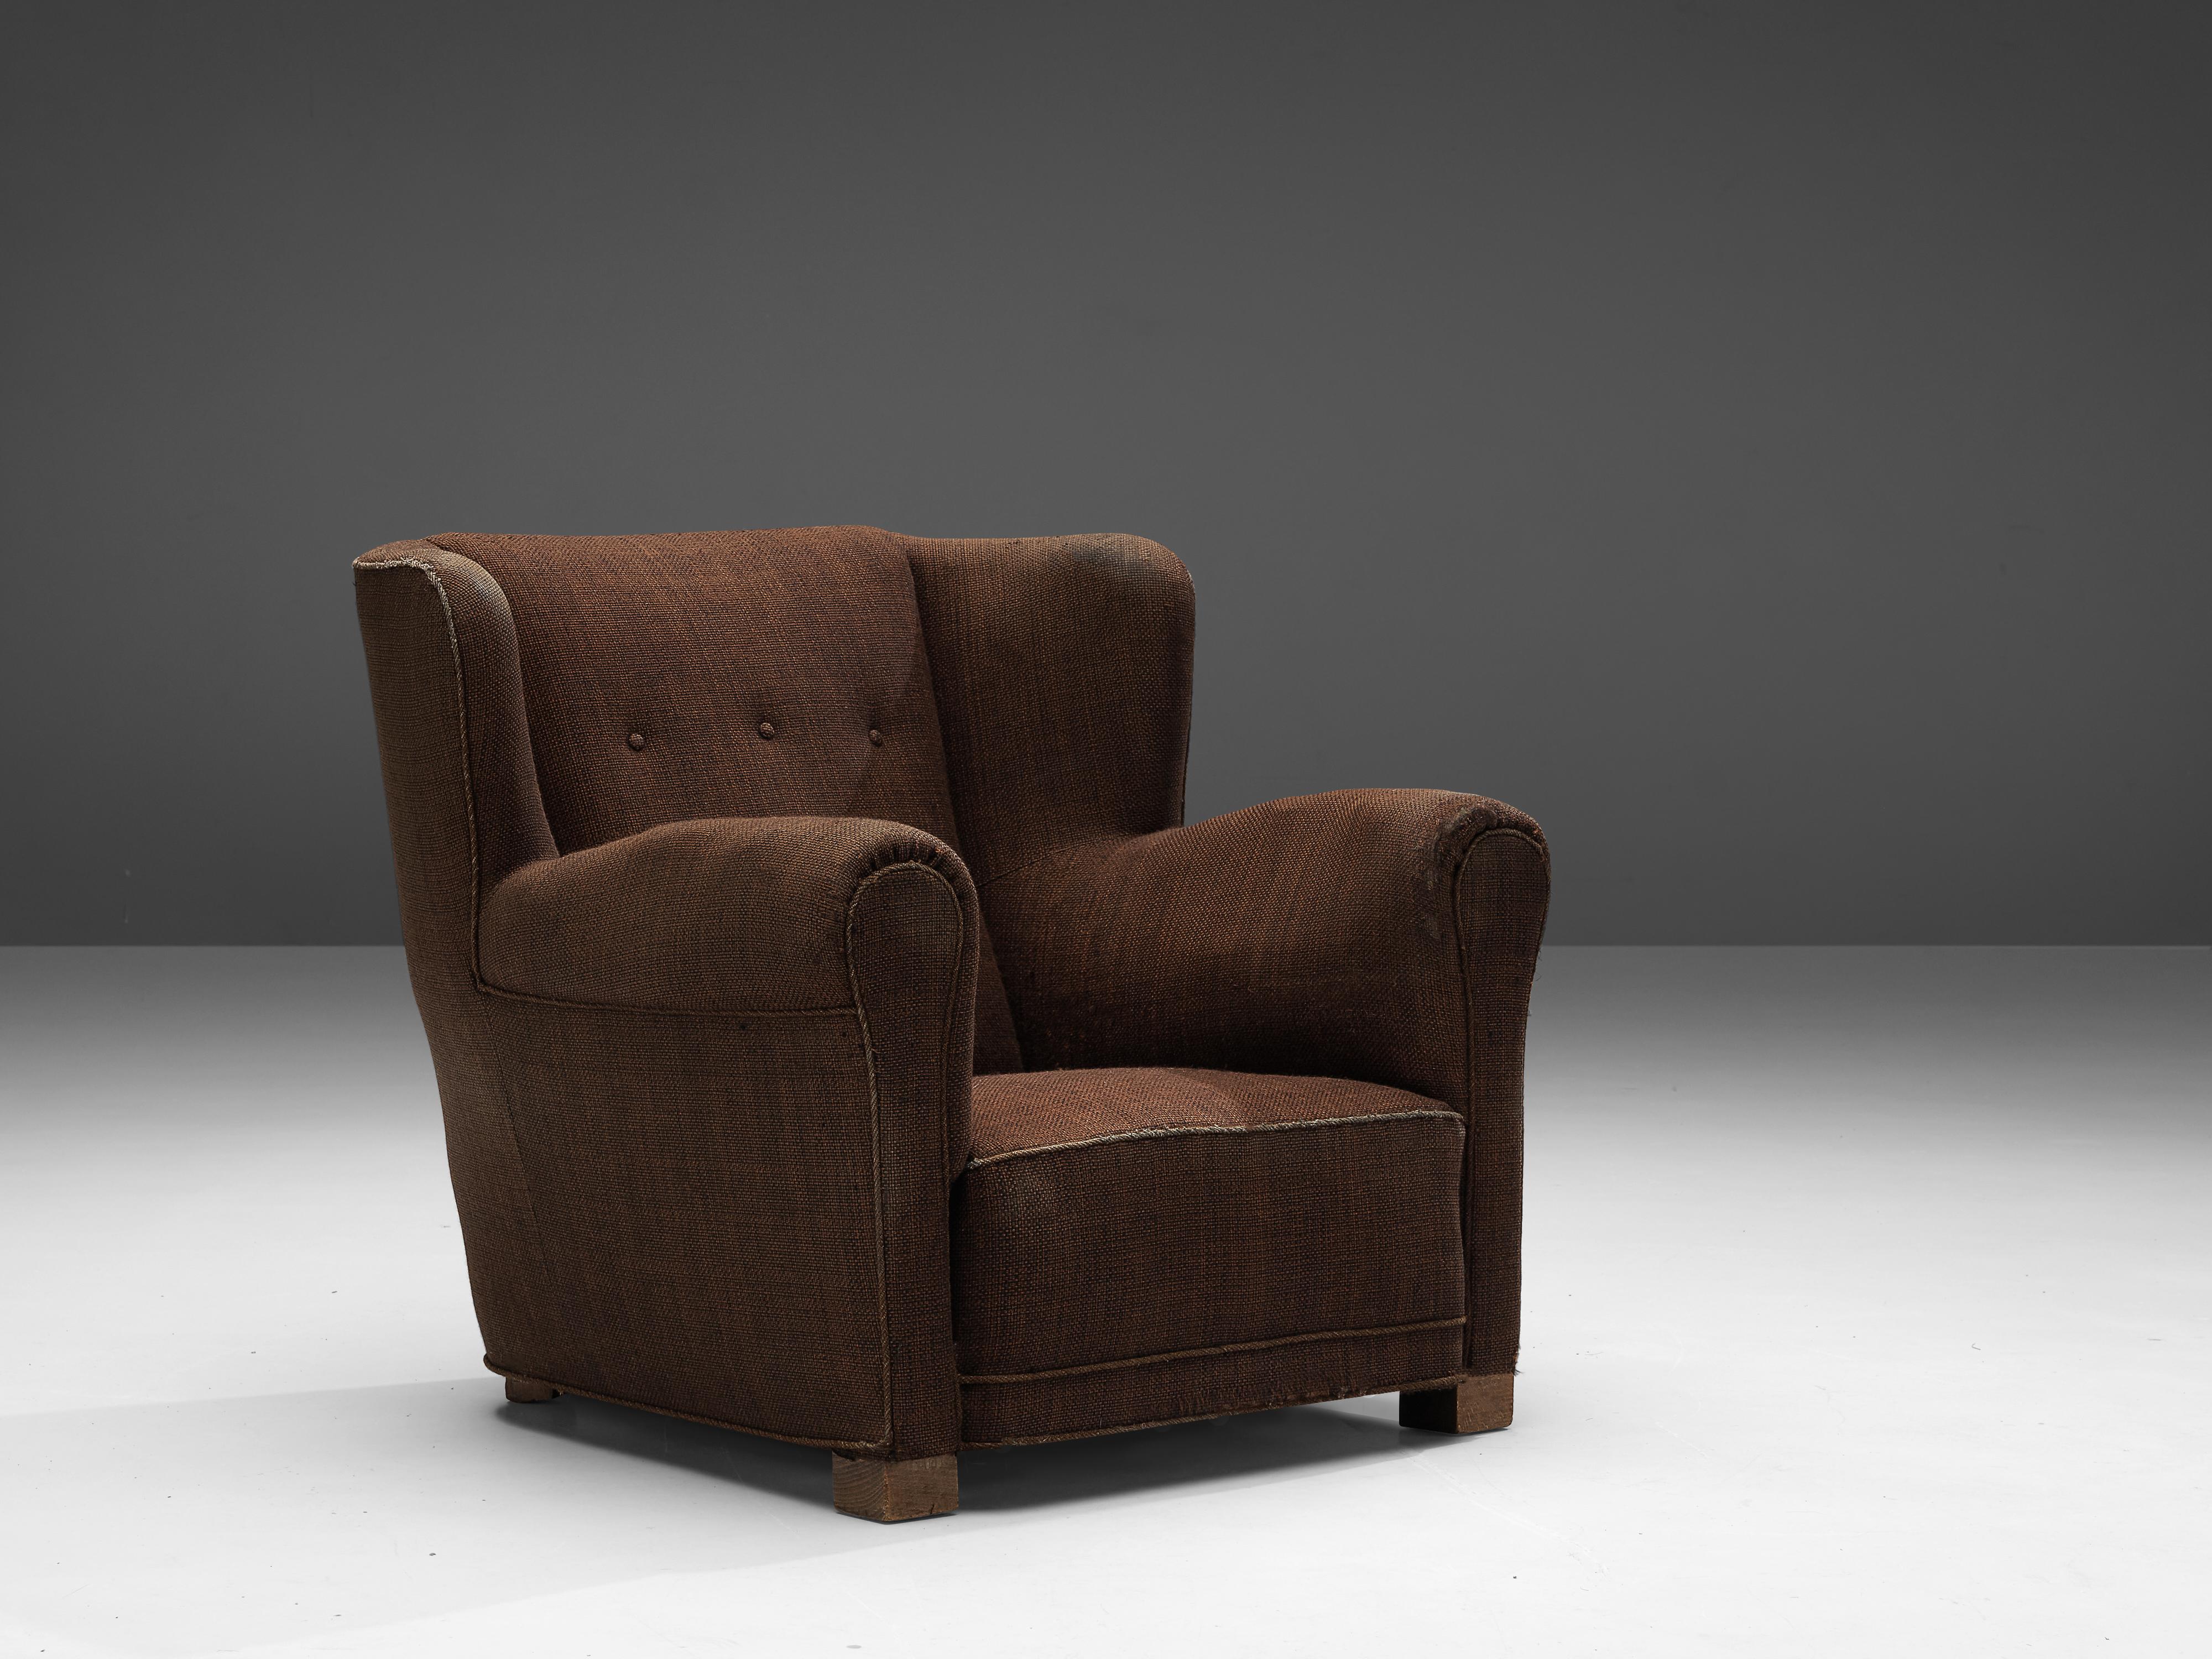 Fauteuil, bois, tissu, Danemark, années 1950

Ce fauteuil volumineux présente un aspect à la fois robuste et accueillant. Le large siège avec accoudoirs et le dossier à ailettes créent une expérience confortable pour l'utilisateur. De dos, la chaise